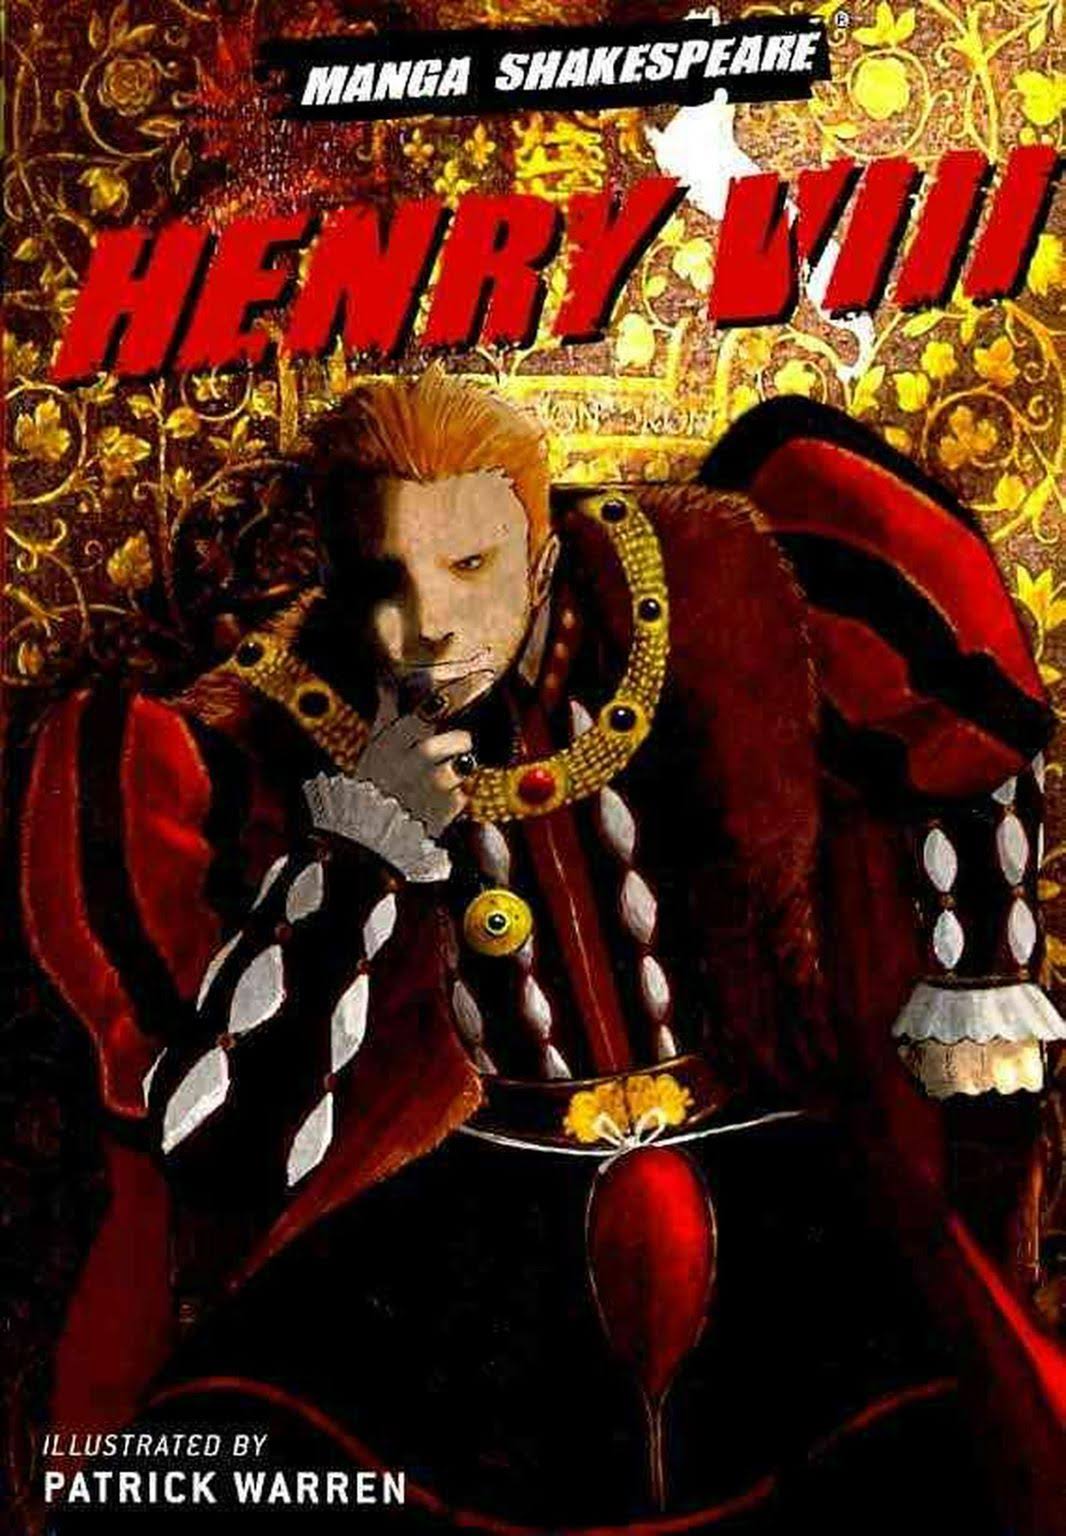 Manga Shakespeare Henry VIII by William Shakespeare